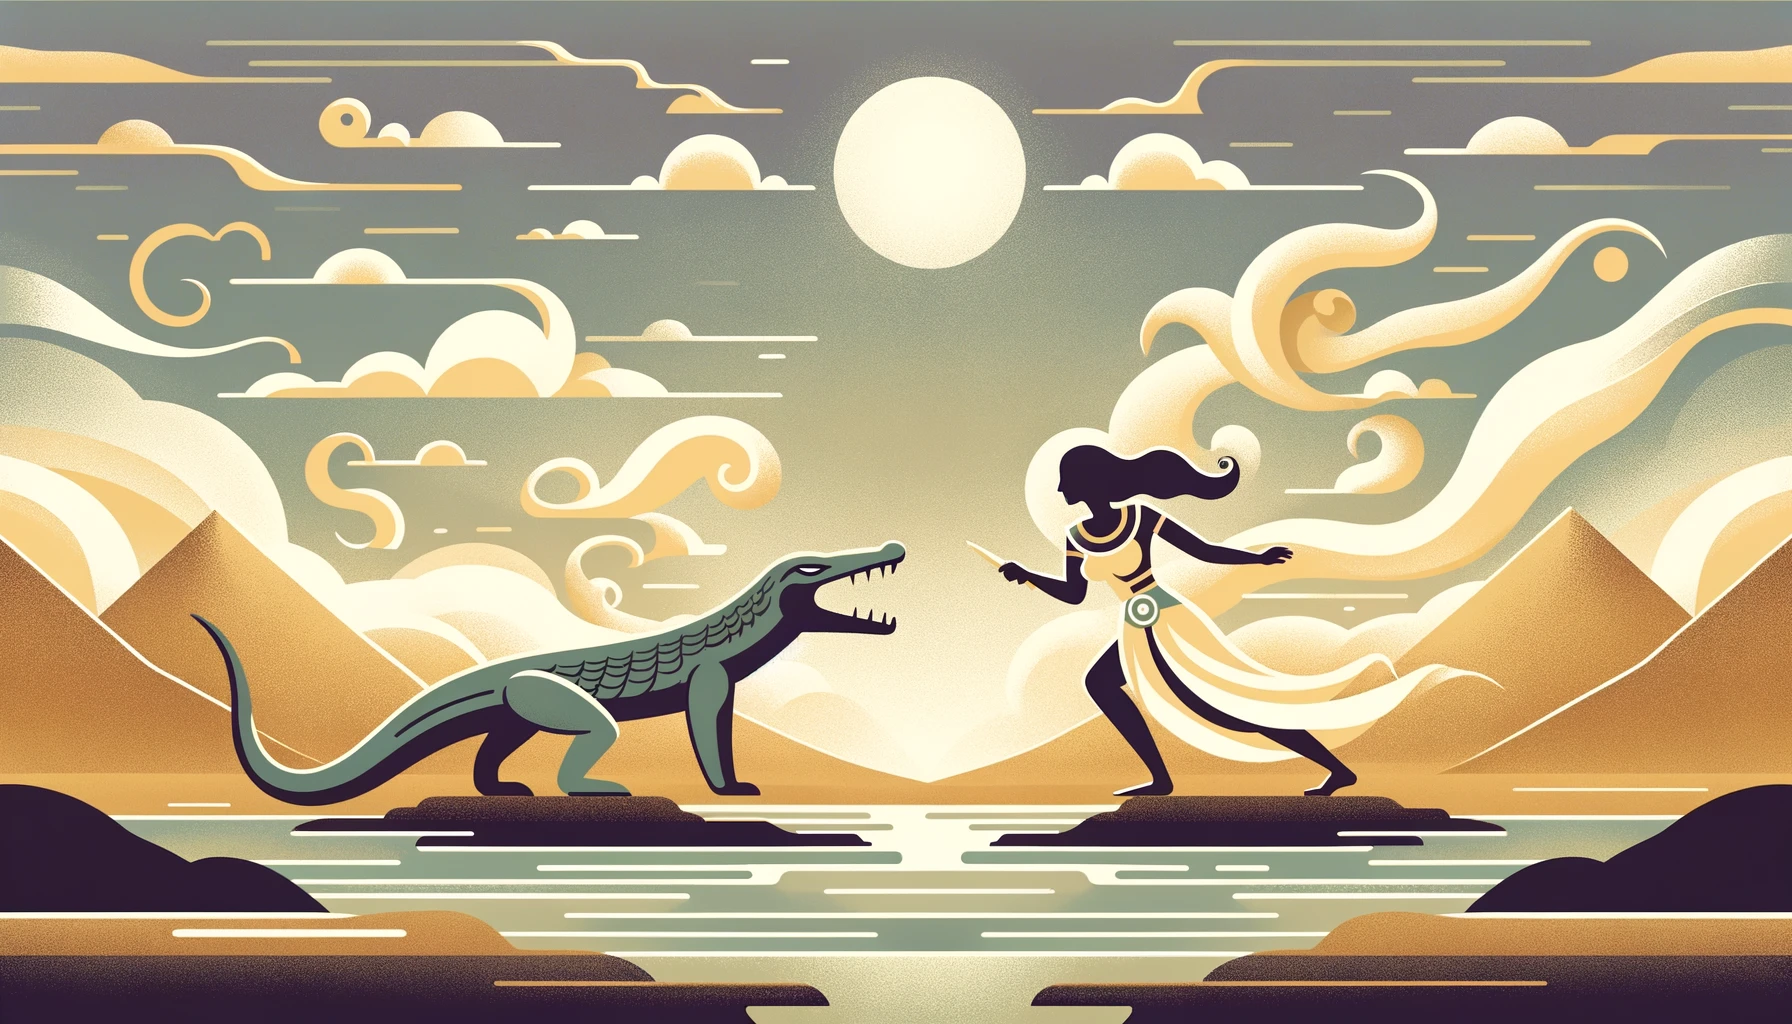 Sobek vs Shu: The Crocodile God vs the God of Air